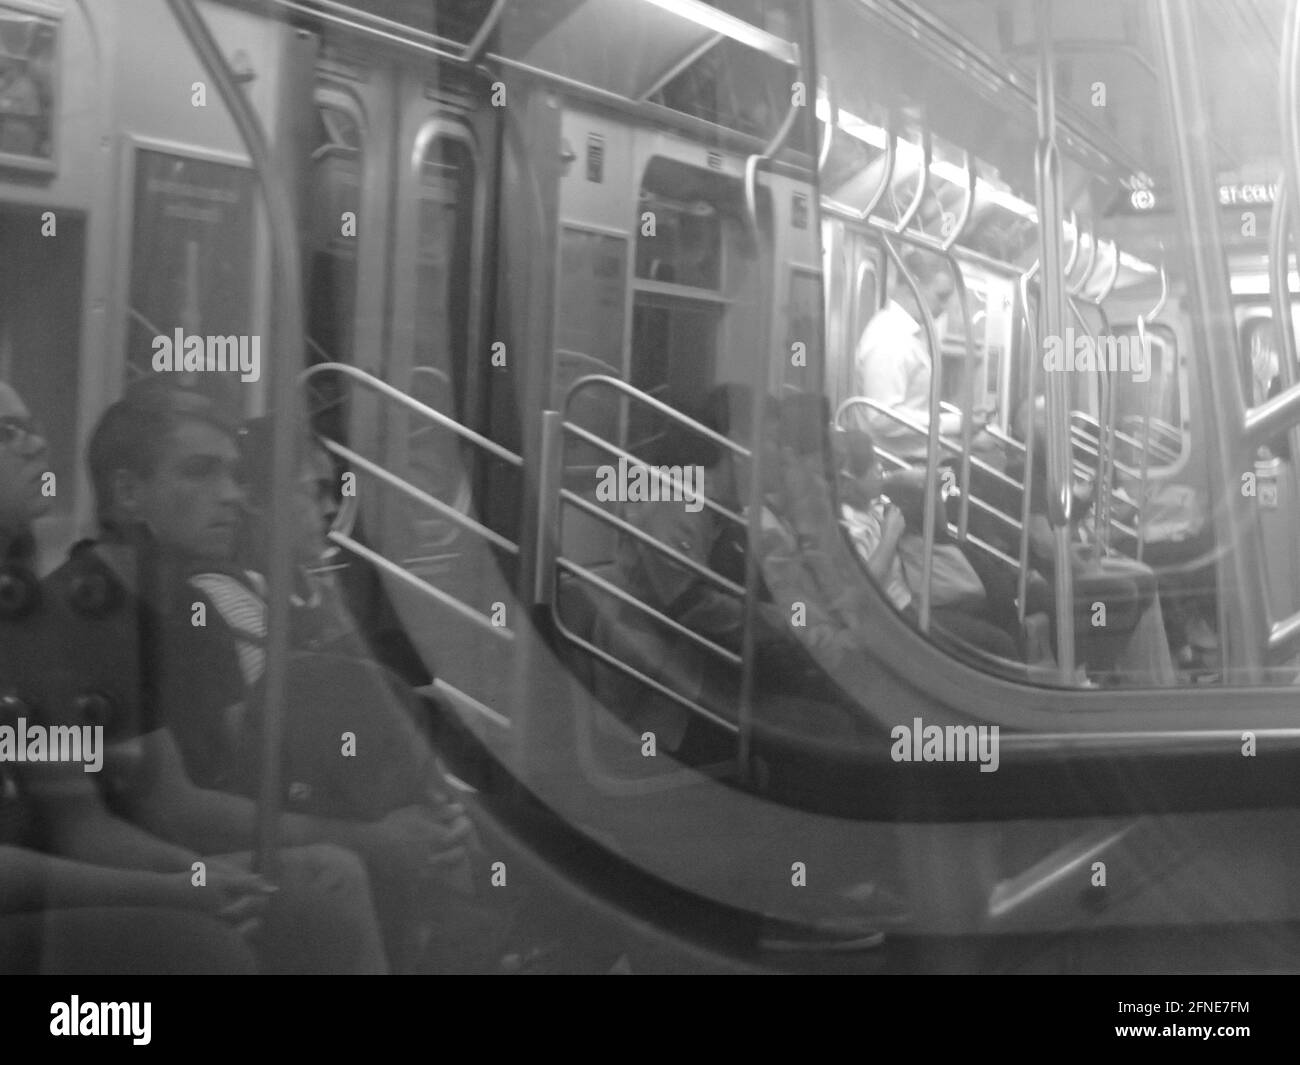 Wackelte Fahrer in zwei Waggons in einem New Yorker U-Bahn-Zug, schaute durch Glas zu Wagen vor und reflektierte die Menschen hinter dem Fotografen Stockfoto